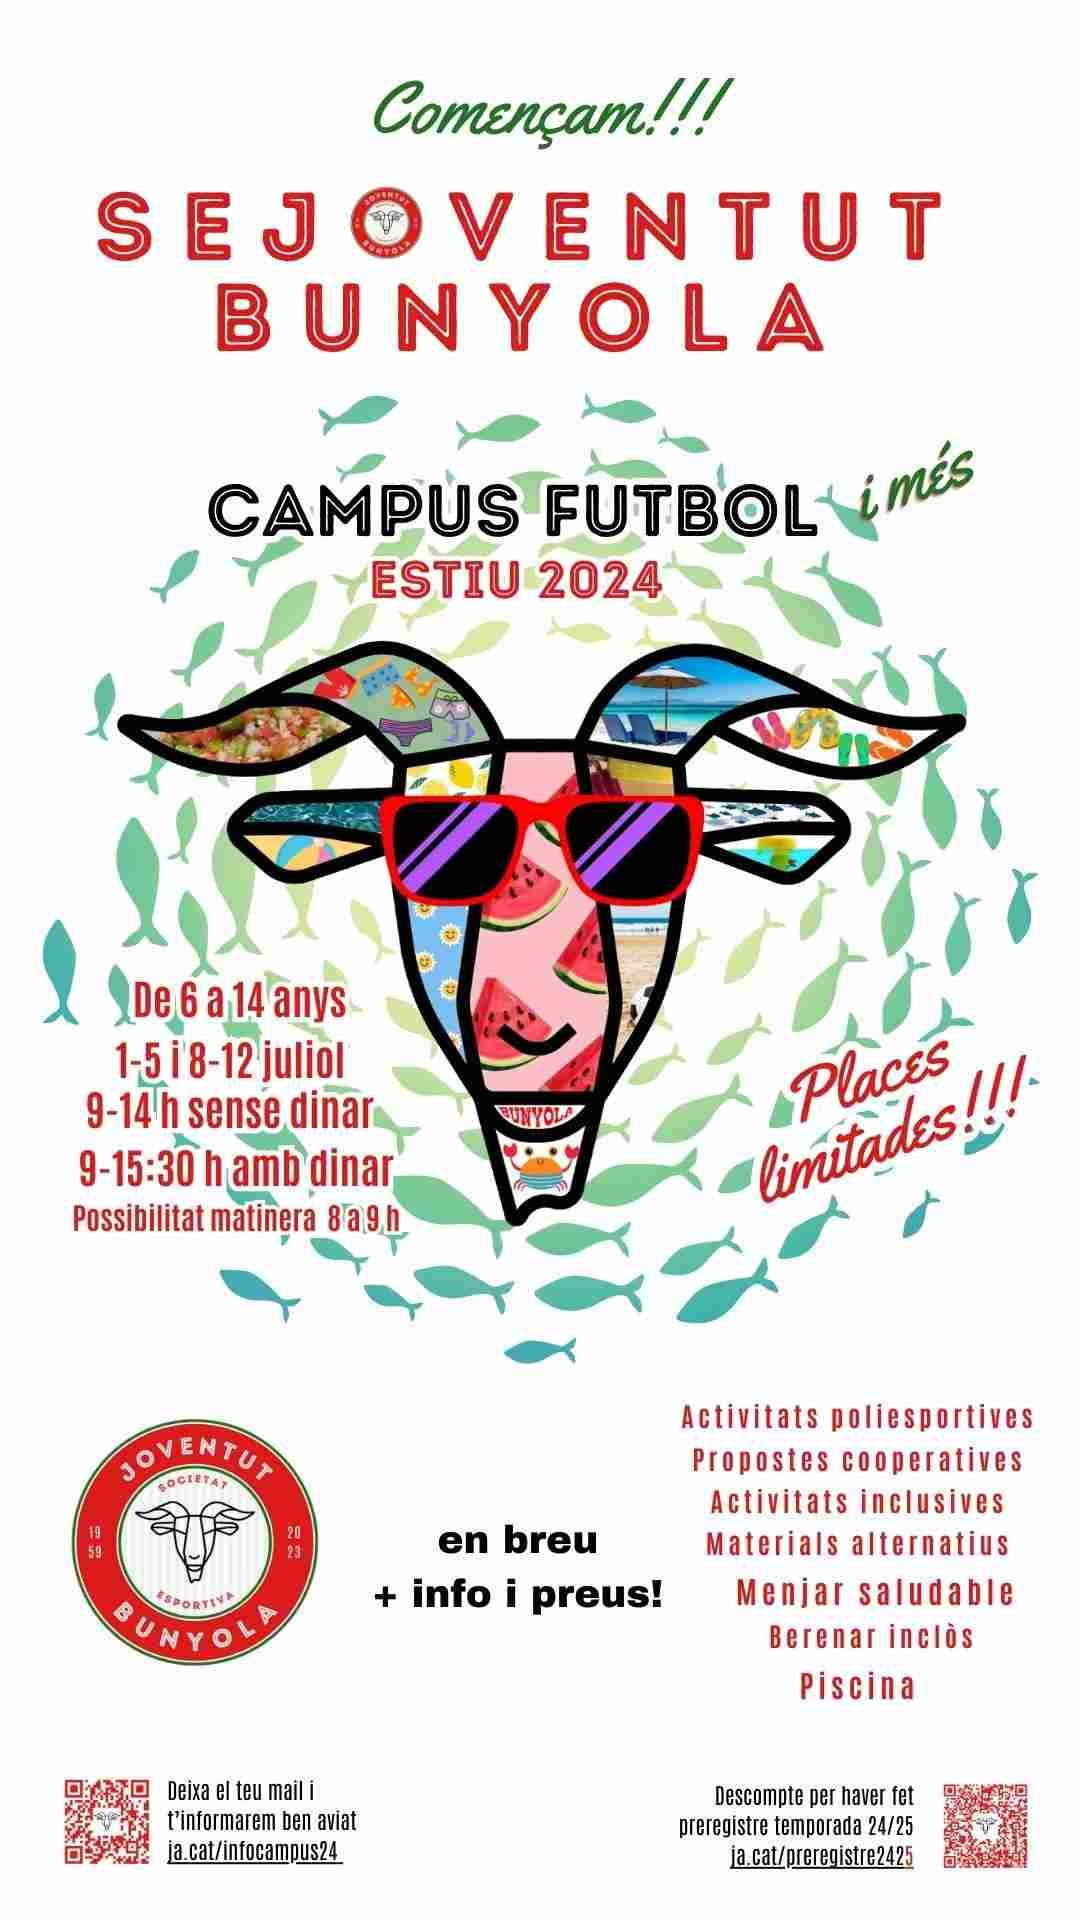 campus estiu futbol 2024 SEJoventut Bunyola 2